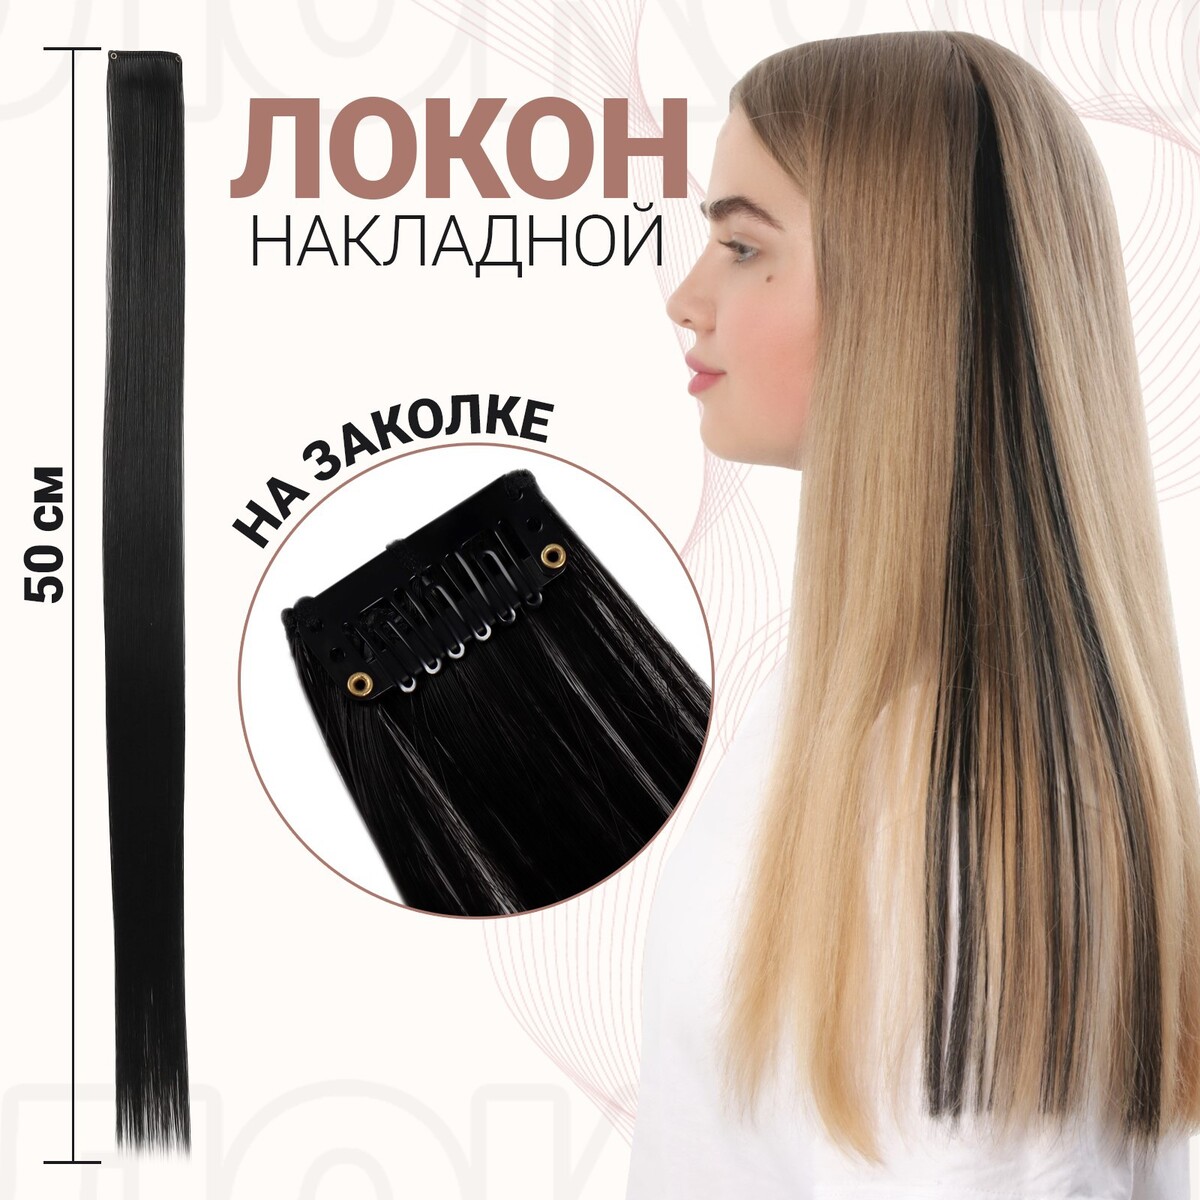 Локон накладной, прямой волос, на заколке, 50 см, 5 гр, цвет черный локон накладной единорог прямой волос на заколке 40 см микс